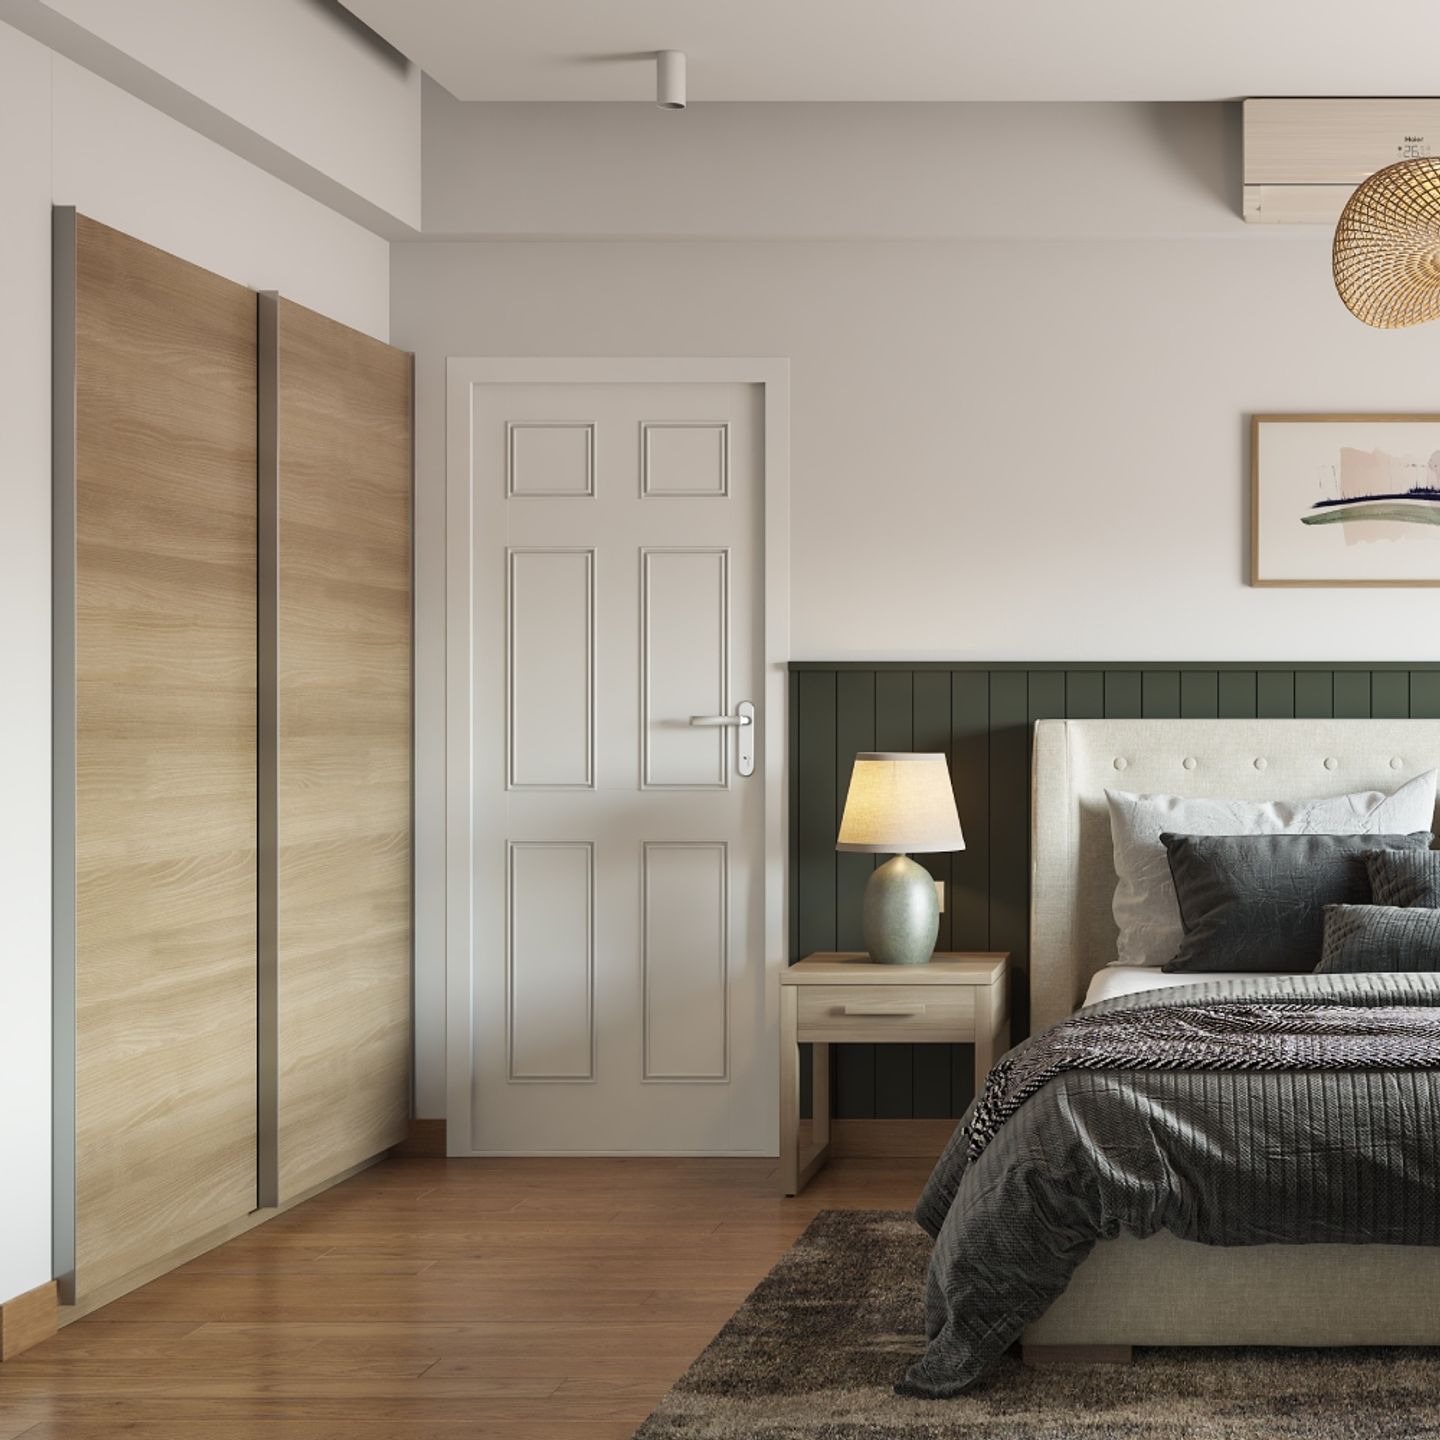 Beige 2-Door Sliding Wardrobe Design For Bedroom - Livspace